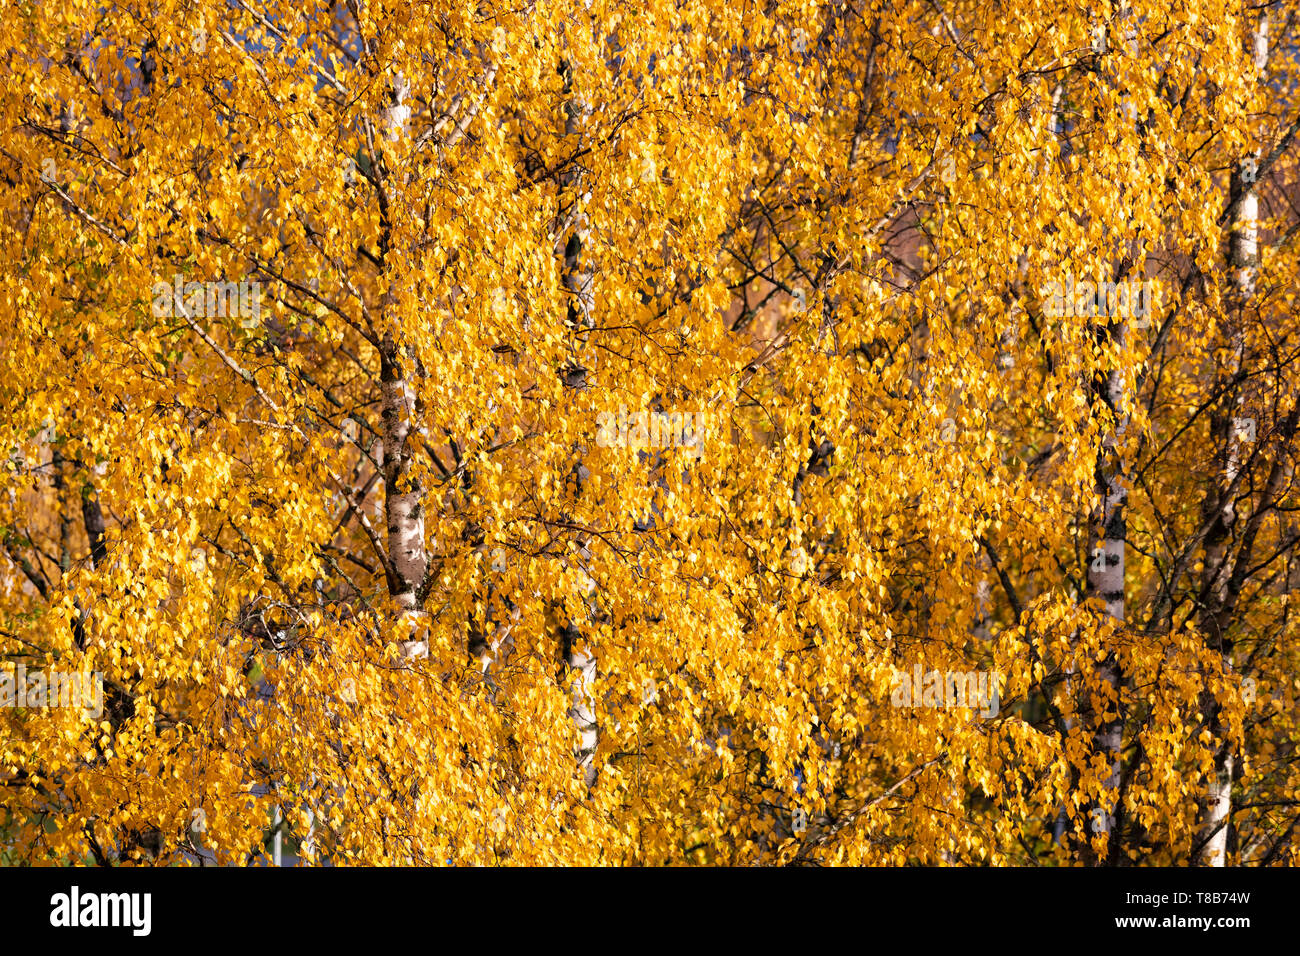 Le bouleau jaune automne fond feuillage Banque D'Images